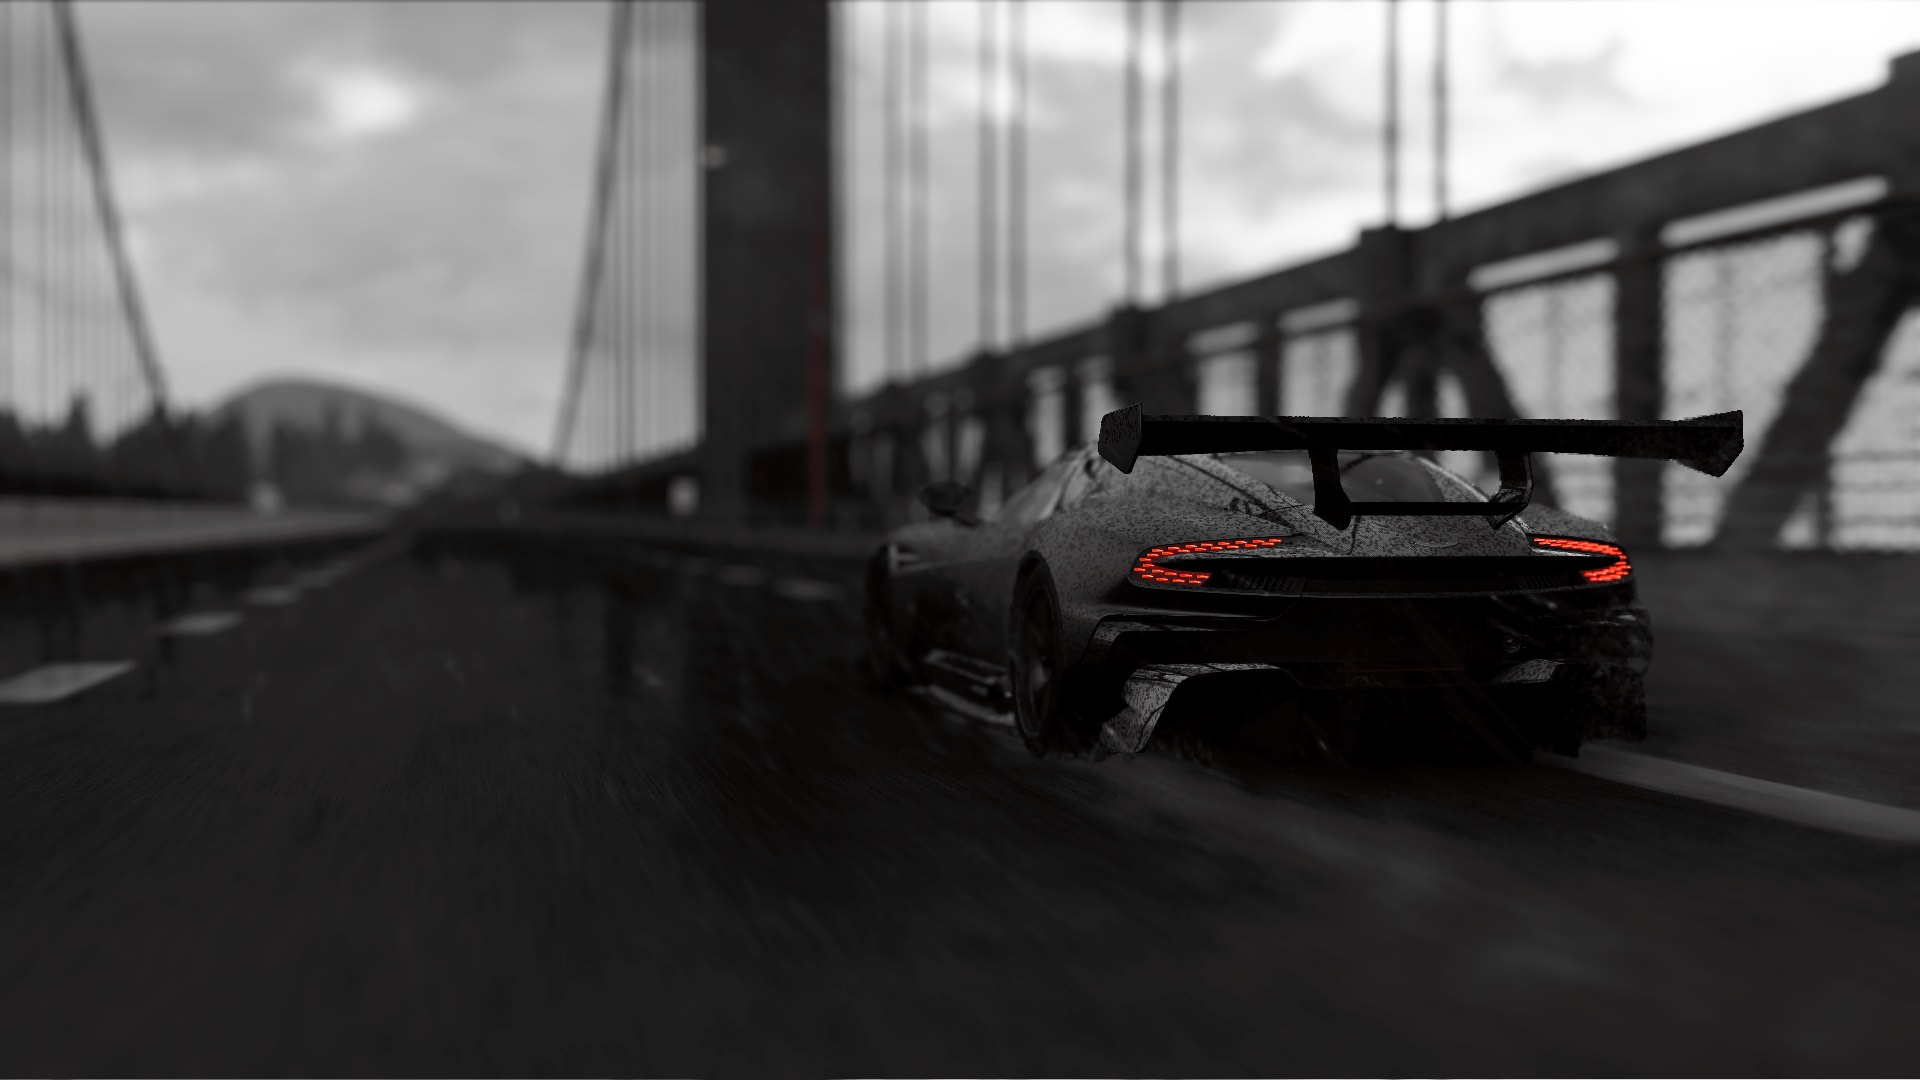 ماشین سیاه و سفید در بازی Project Cars 2